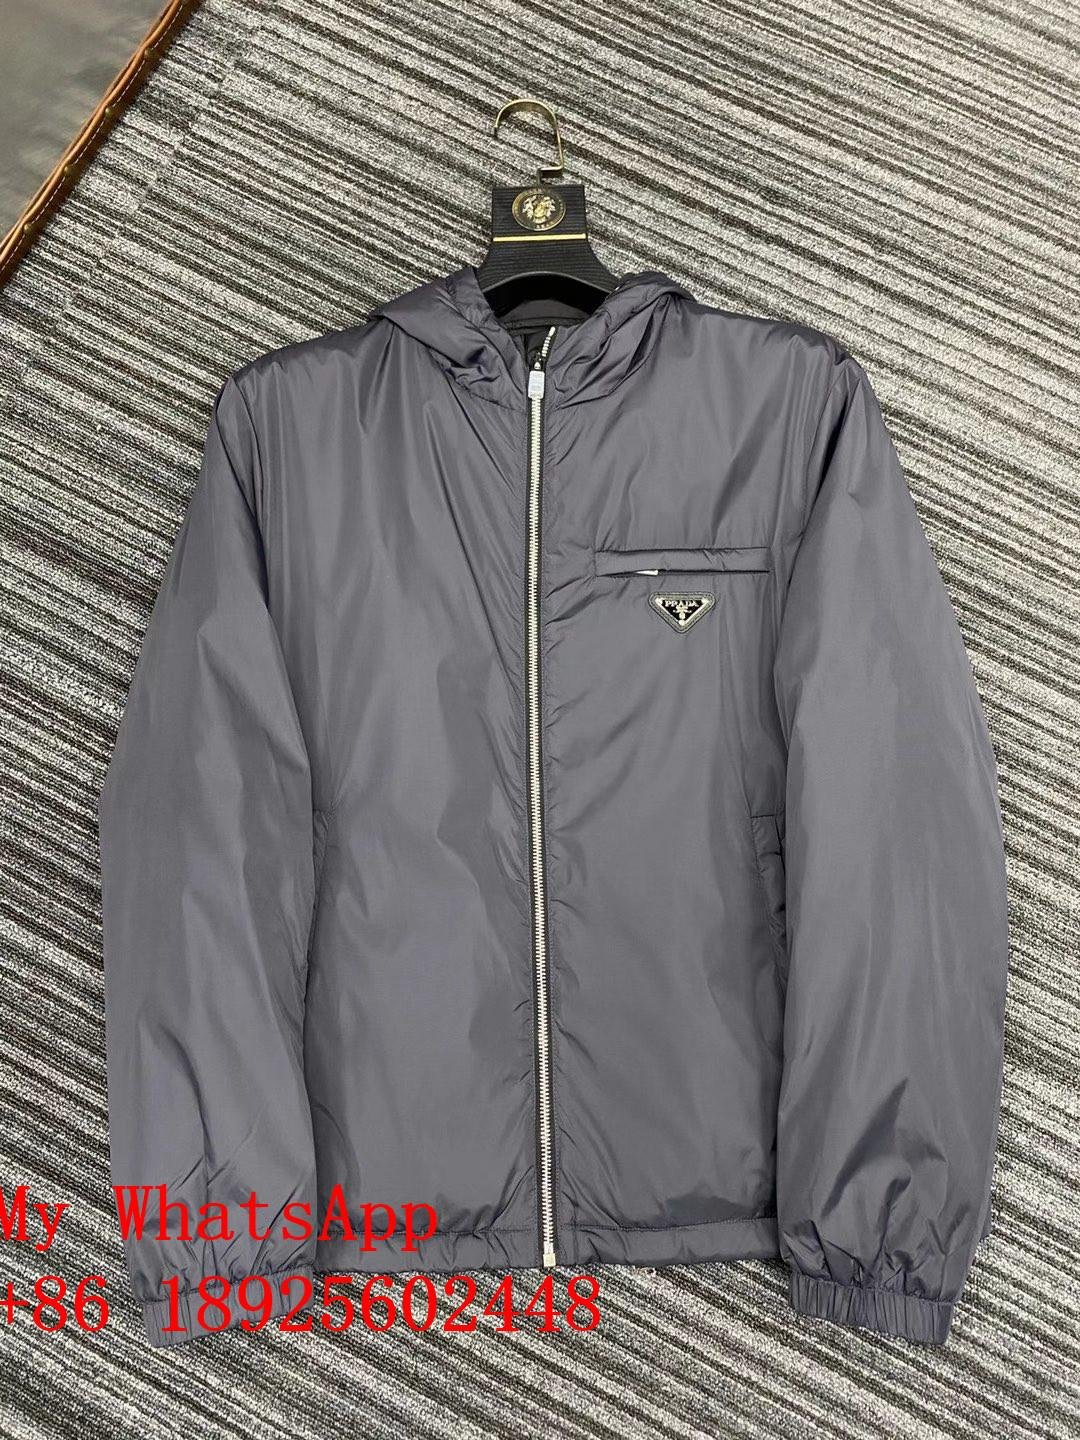 Wholesale p rada coat  Men p rada and pr ada  down jacket pra da vest best price 2